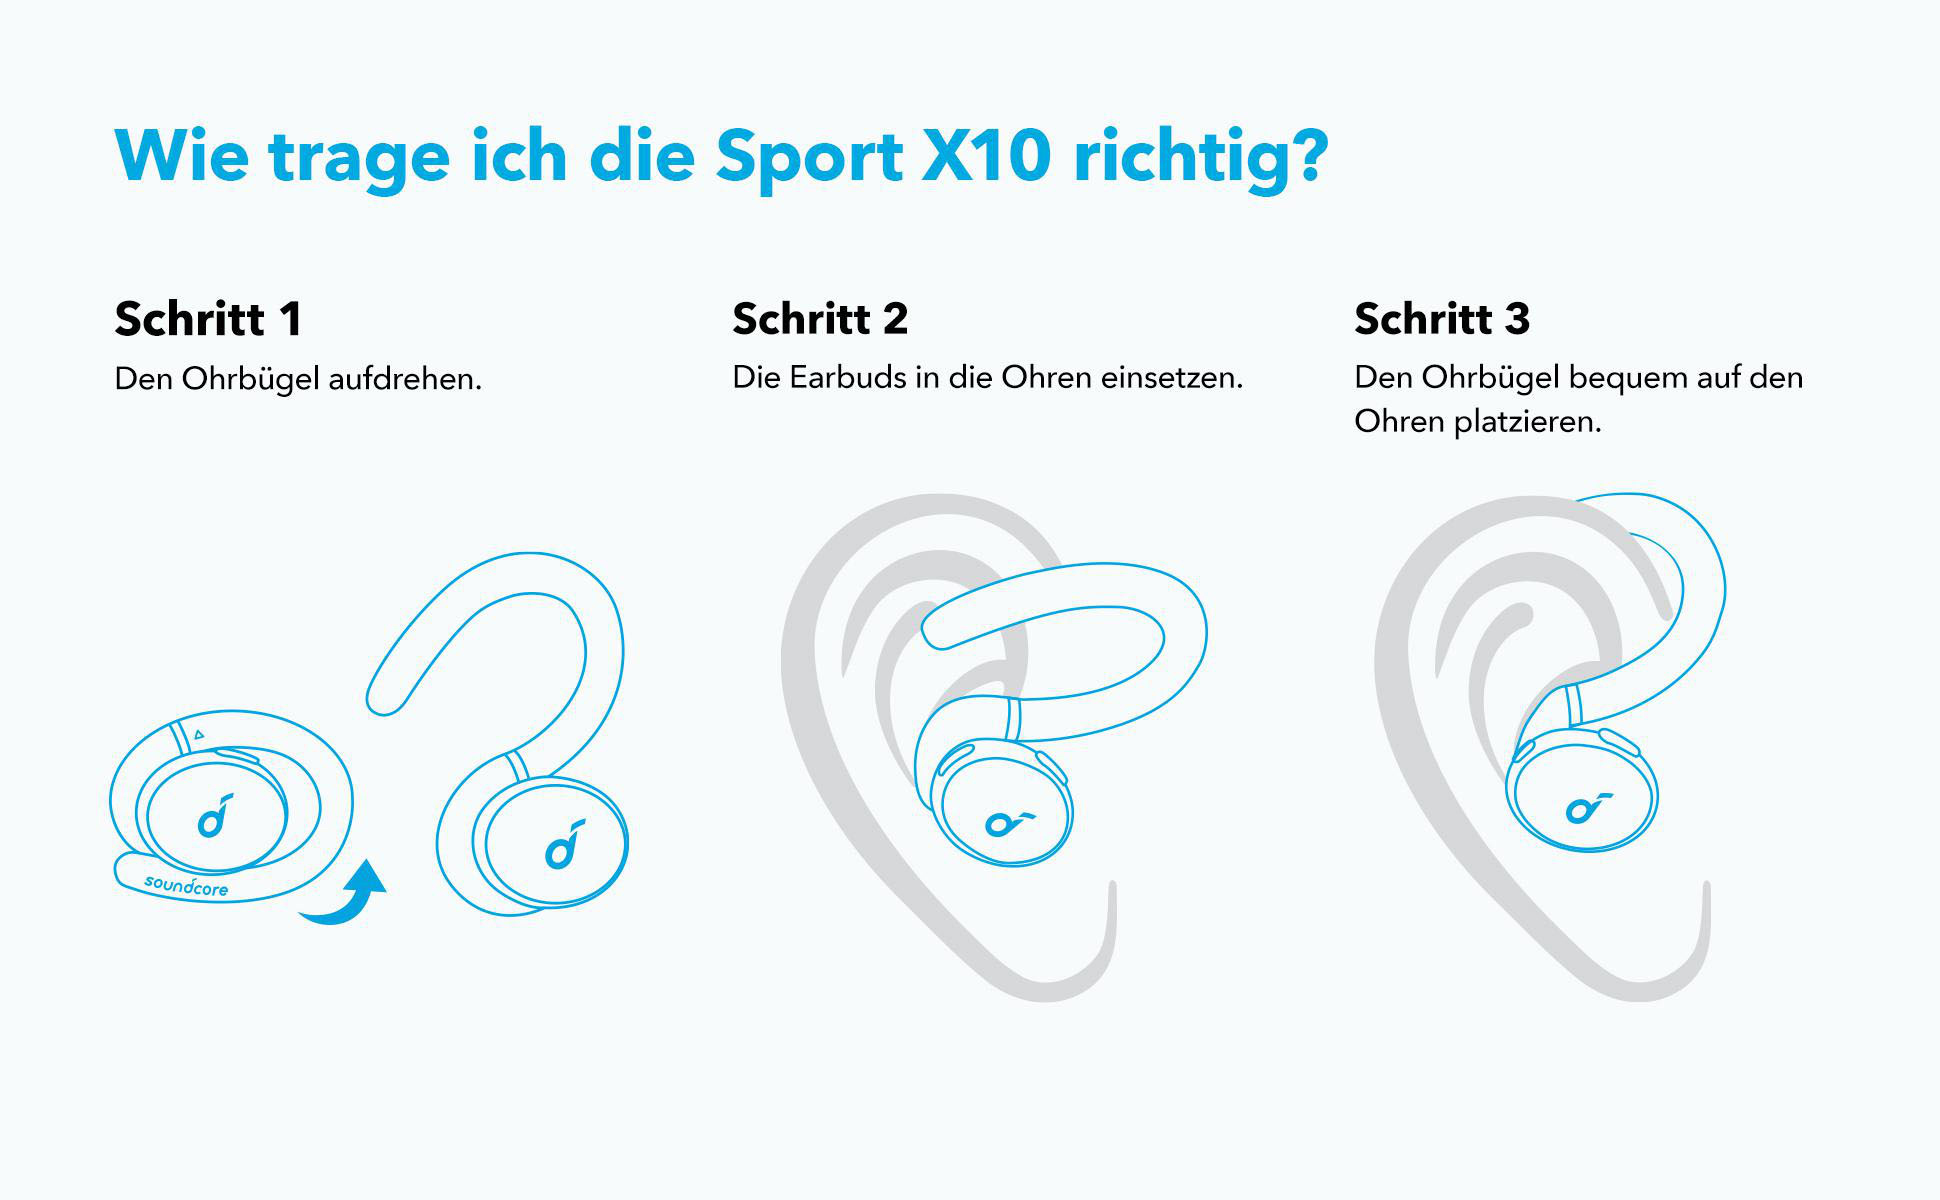 Soundcore Schwarz ANKER Kopfhörer Sport X10, BY SOUNDCORE In-ear Bluetooth